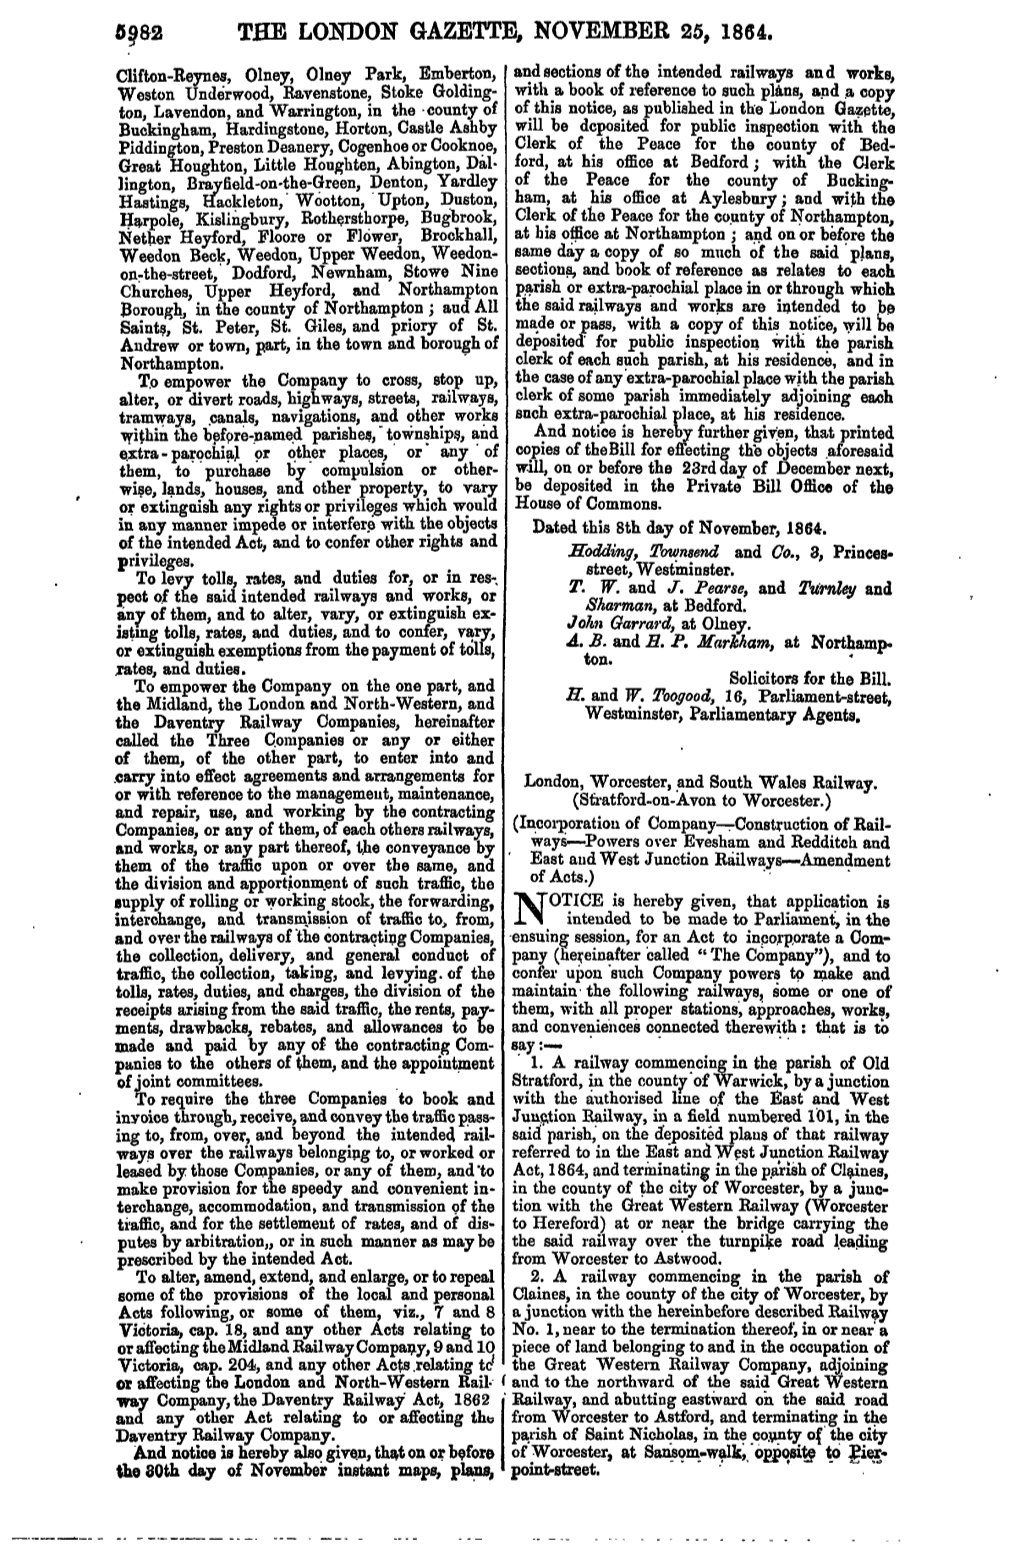 The L01toon Gazette, November 25, 1864